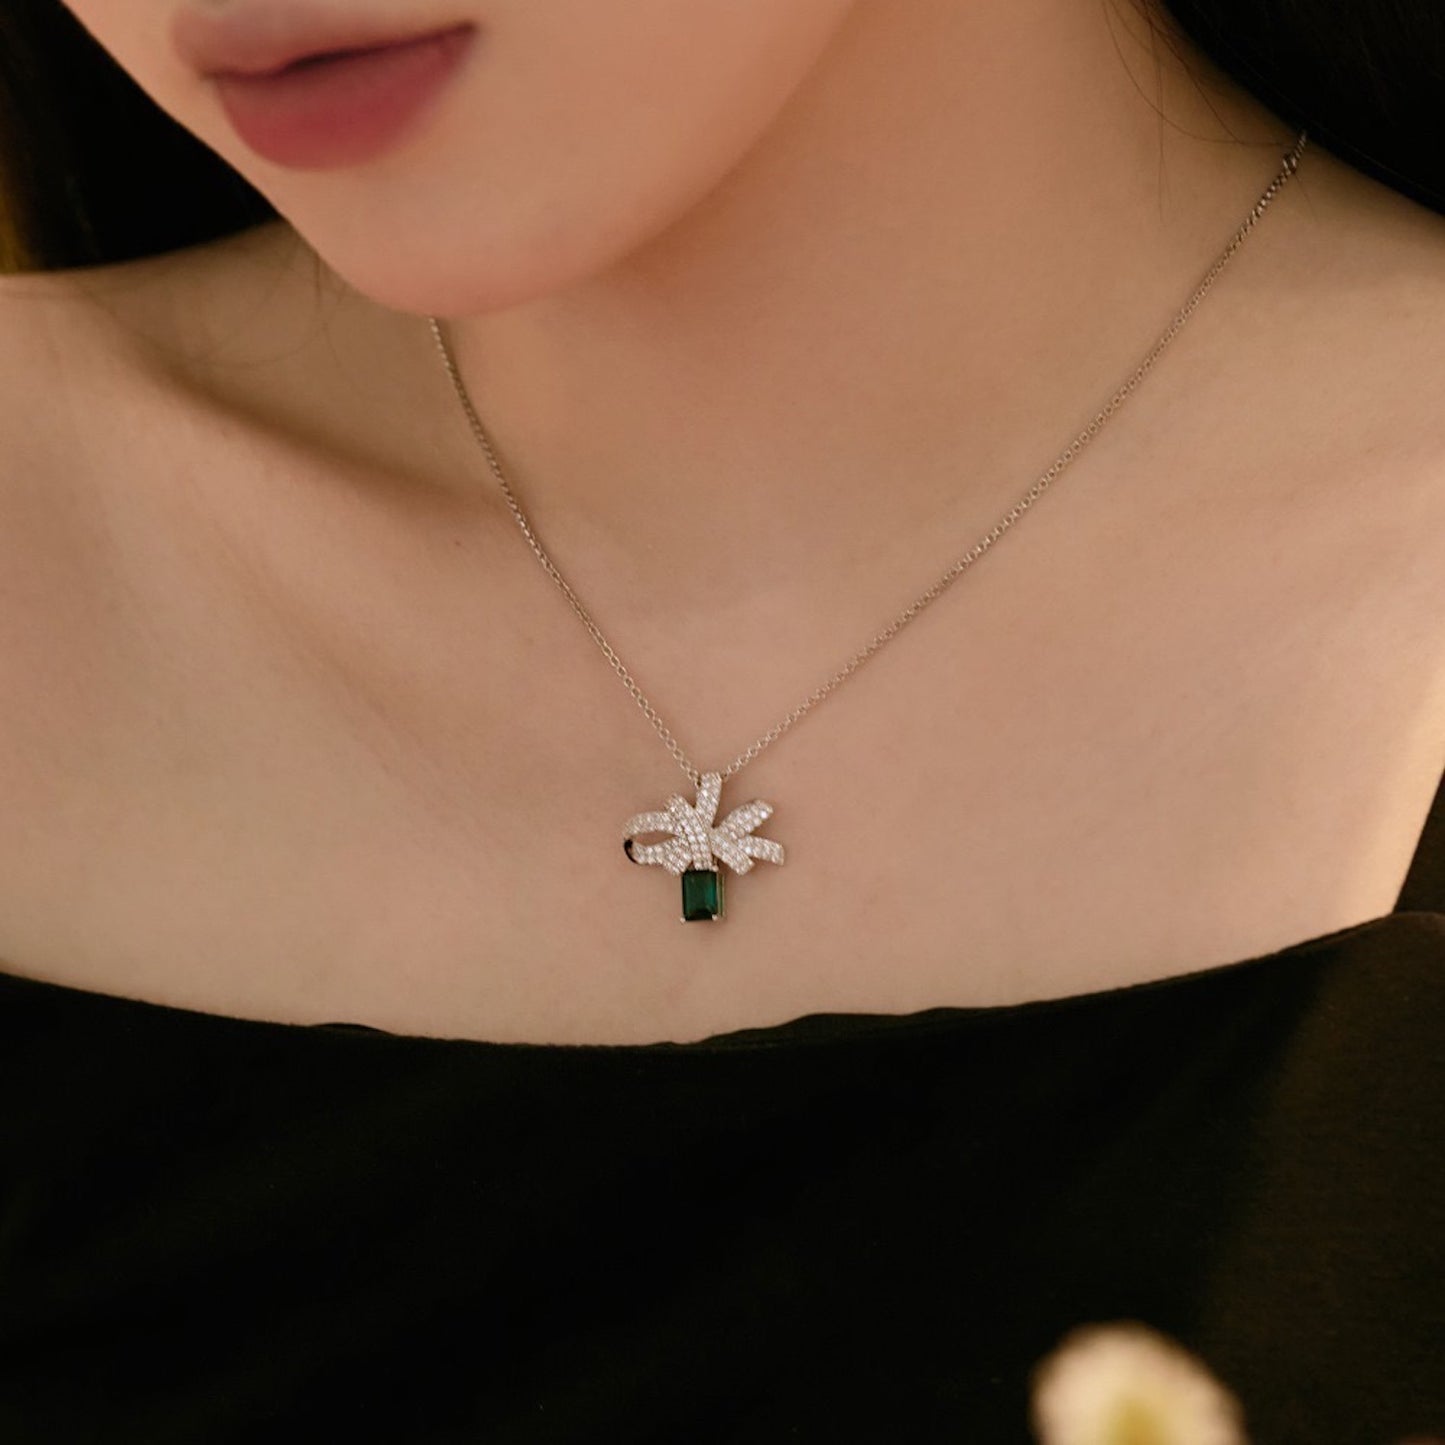 Emerald Diamond White Gold Necklace